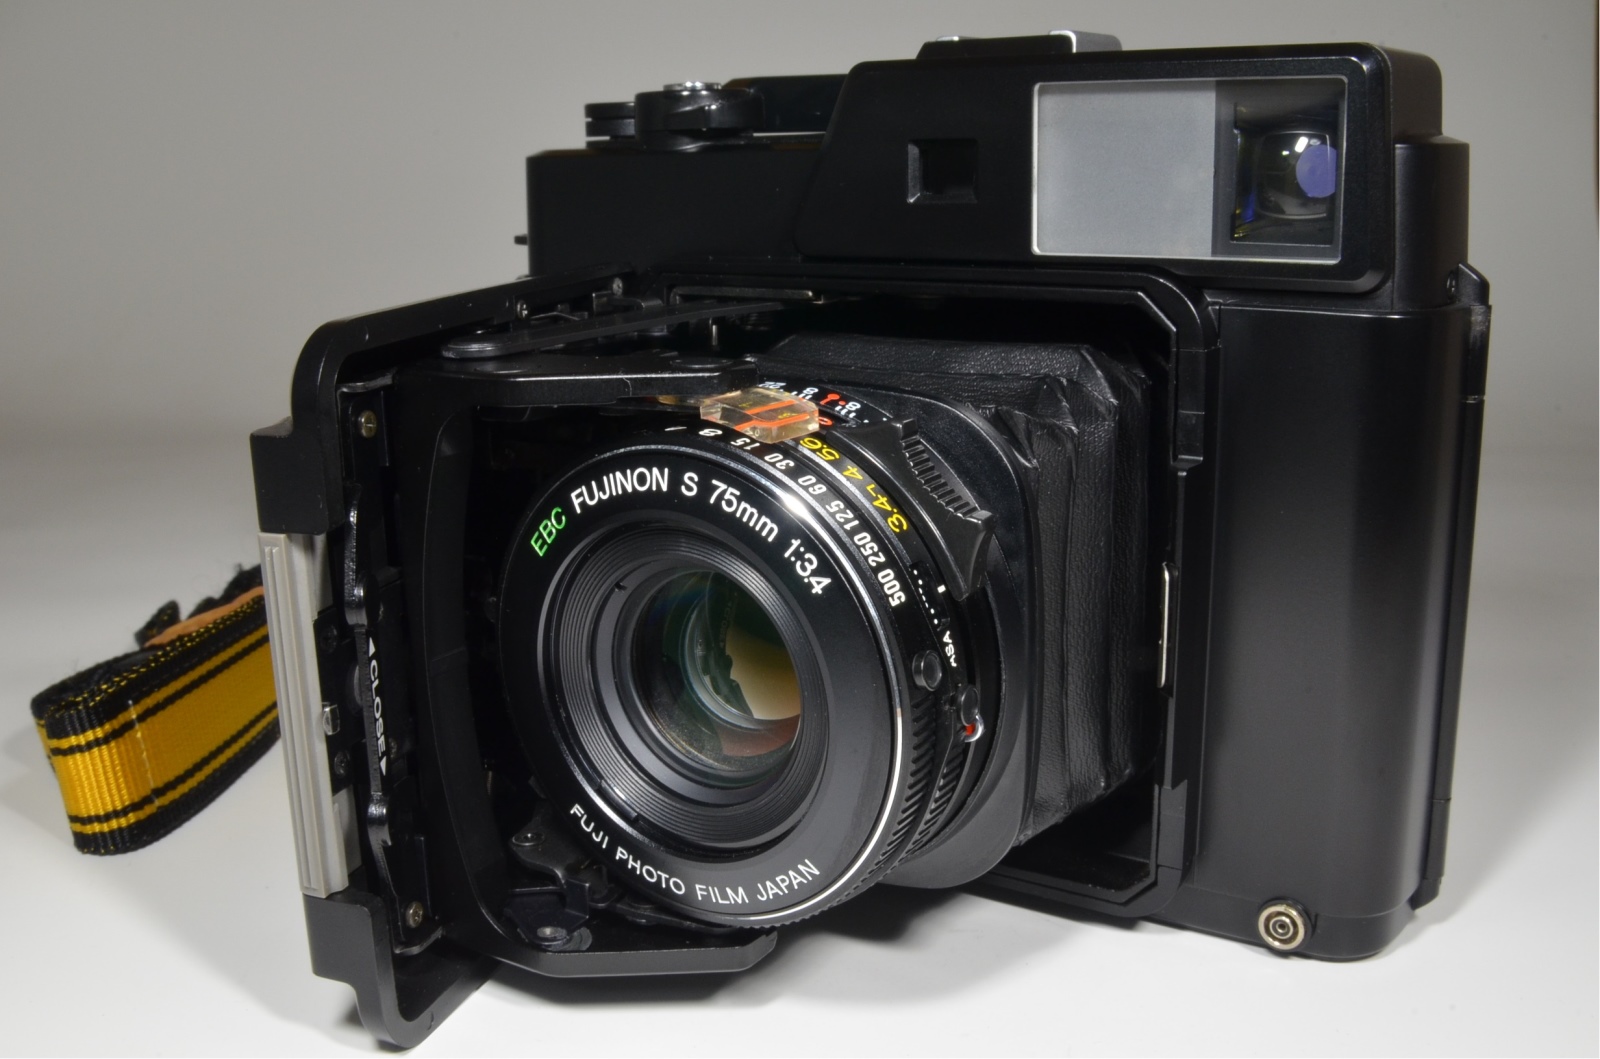 fujifilm fujica gs645 pro fujinon 75mm f3.4 medium format film camera